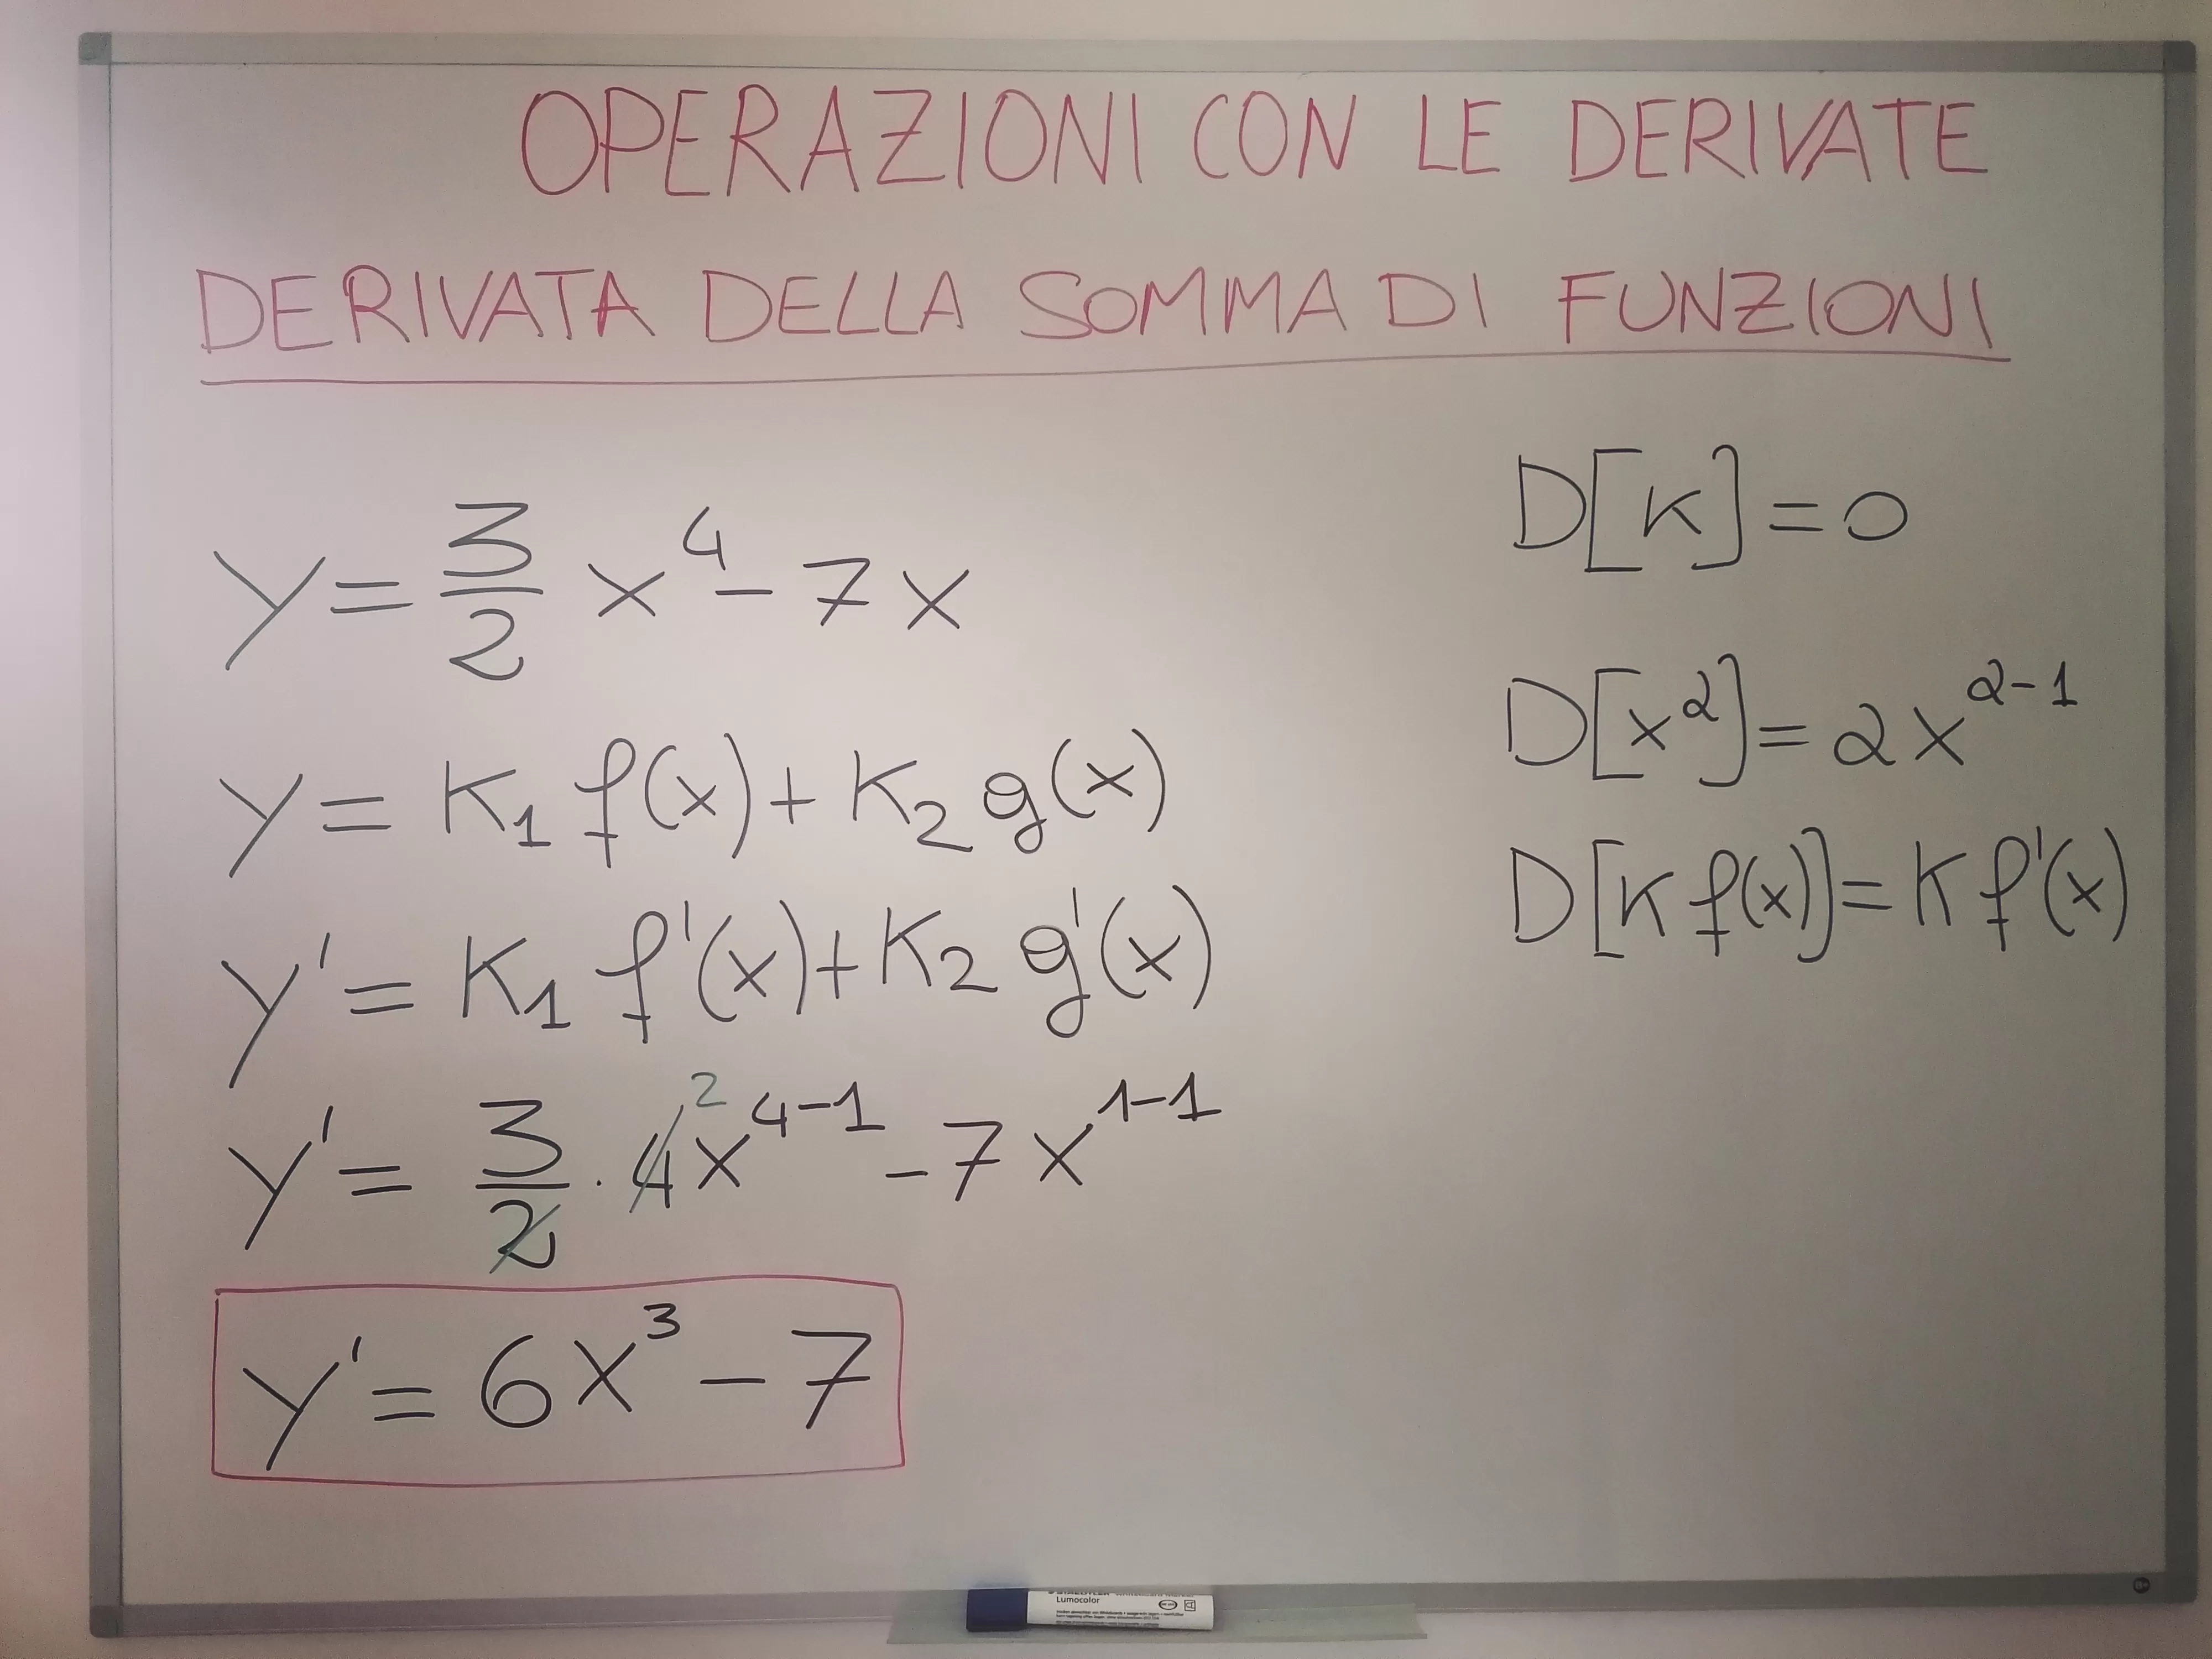 Calcola la derivata di y=3/2x^4-7x